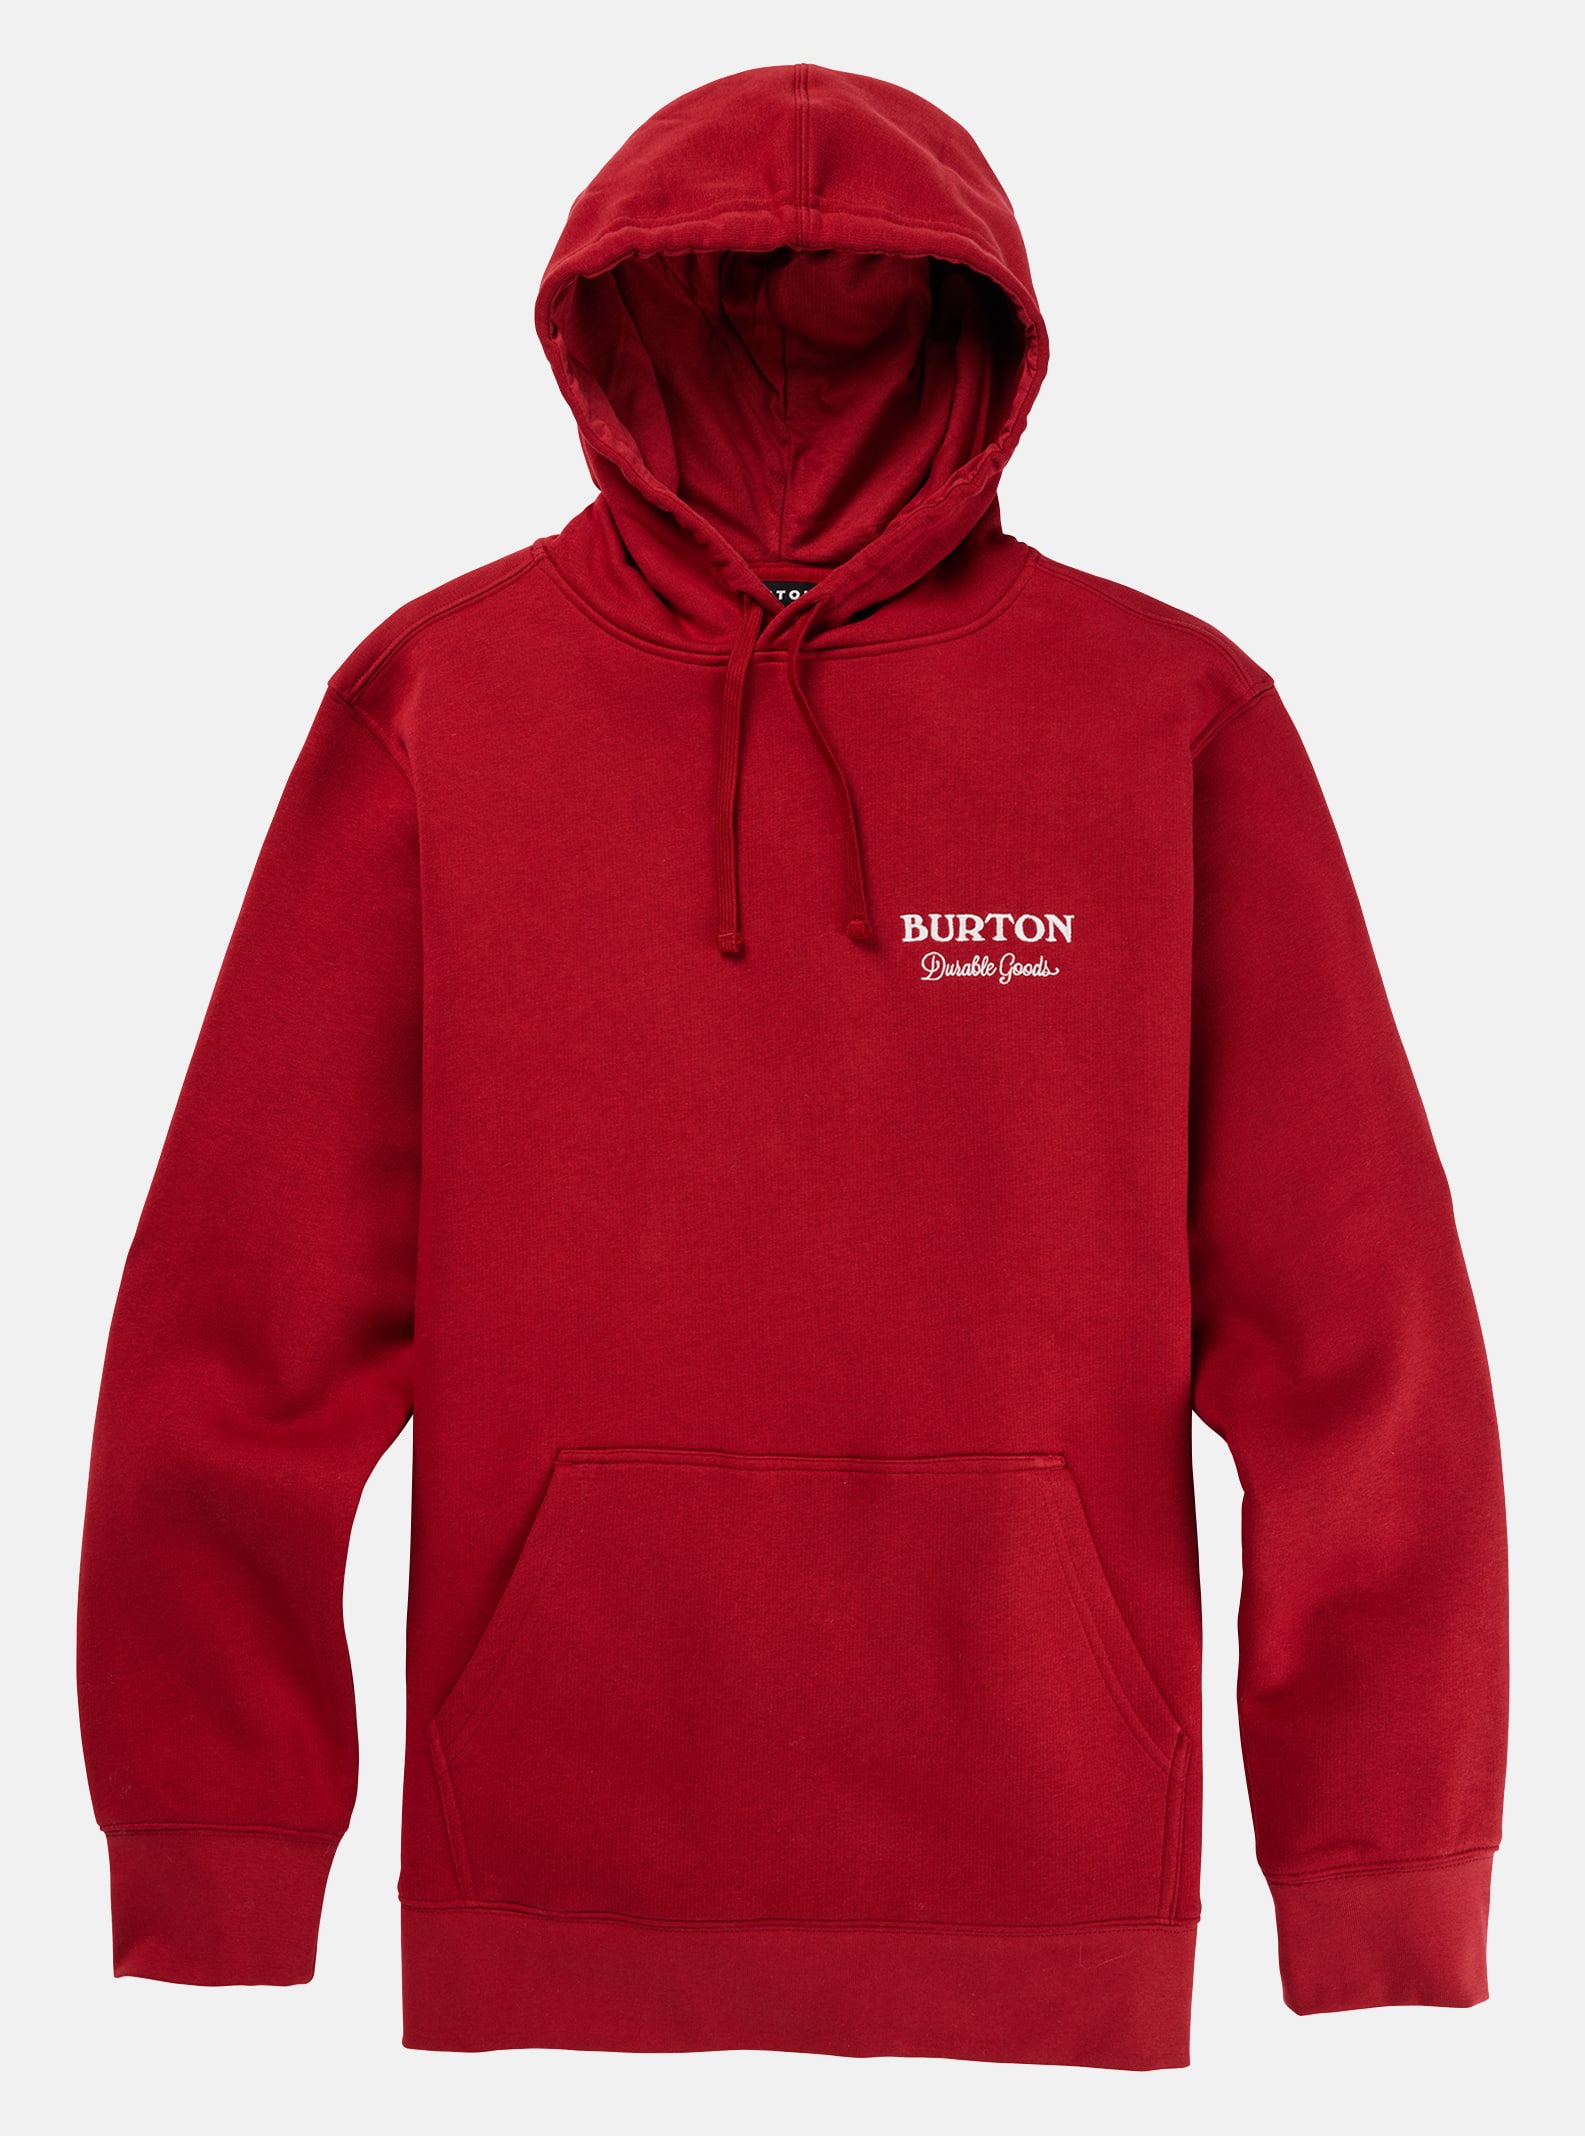 Durable Goods Pullover Hoodie Sweatshirt | Burton.com Winter 2023 US